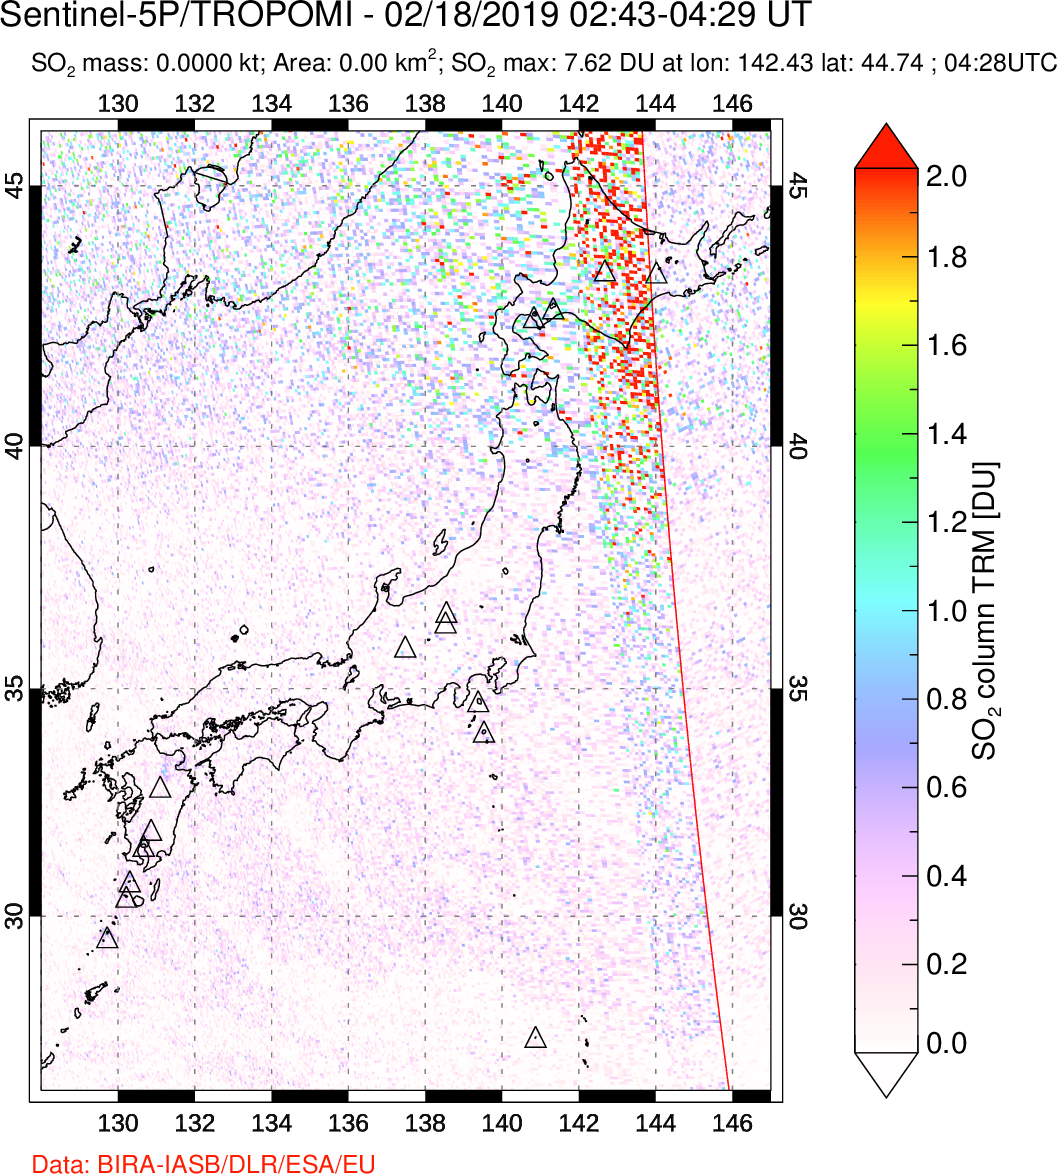 A sulfur dioxide image over Japan on Feb 18, 2019.